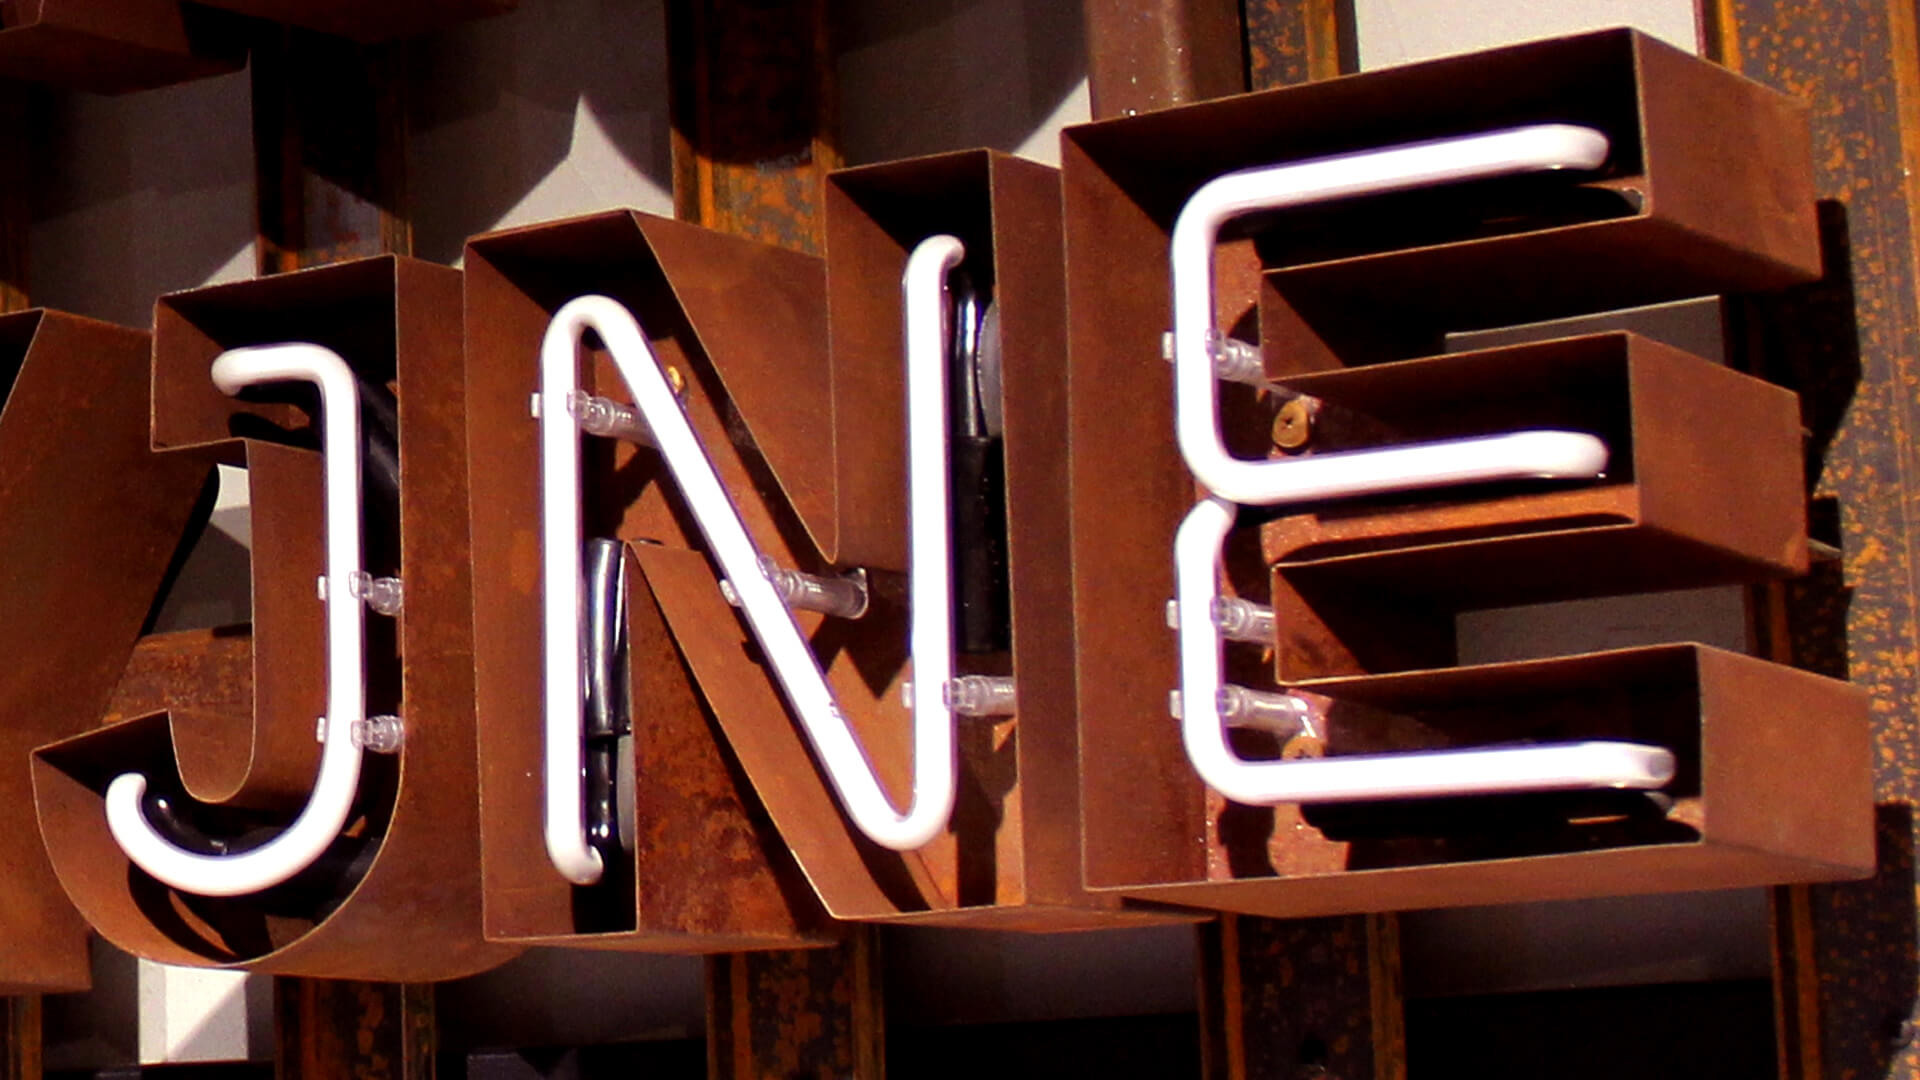 Verrostete Buchstaben - Buchstaben aus verrostetem Blech mit Neon-Innenleben